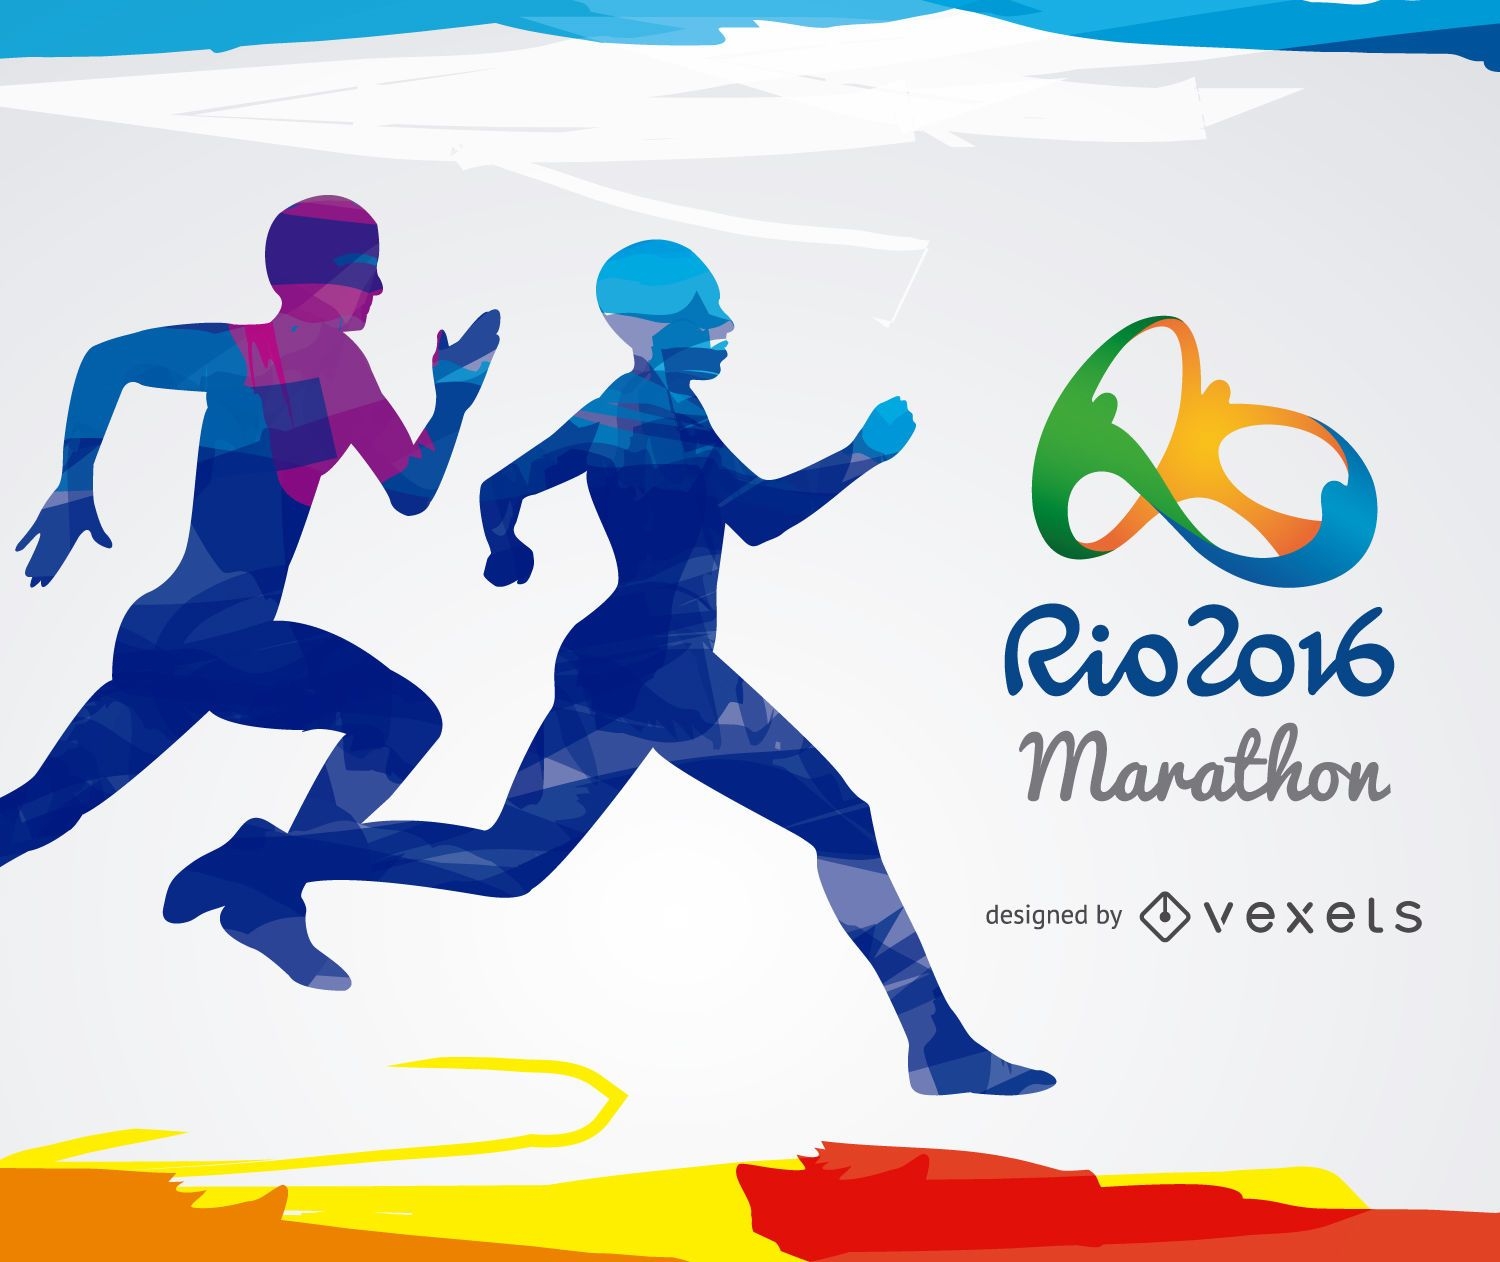 Juegos Olímpicos Río 2016 - Maratón